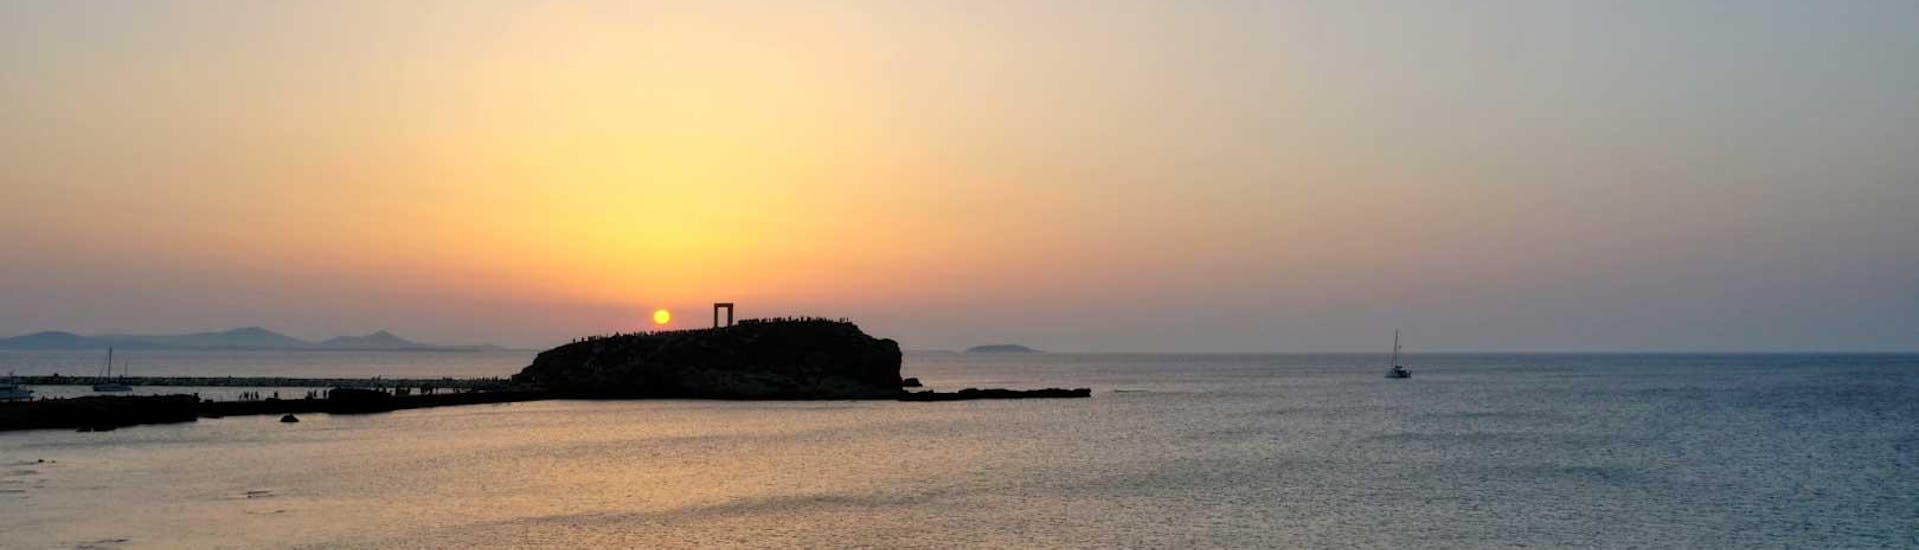 Tijdens de Privé Sunset Sailing Cruise in Naxos met Naxos Catamaran kun je genieten van een prachtig uitzicht op de Apollon Tempel in Naxos bij zonsondergang.